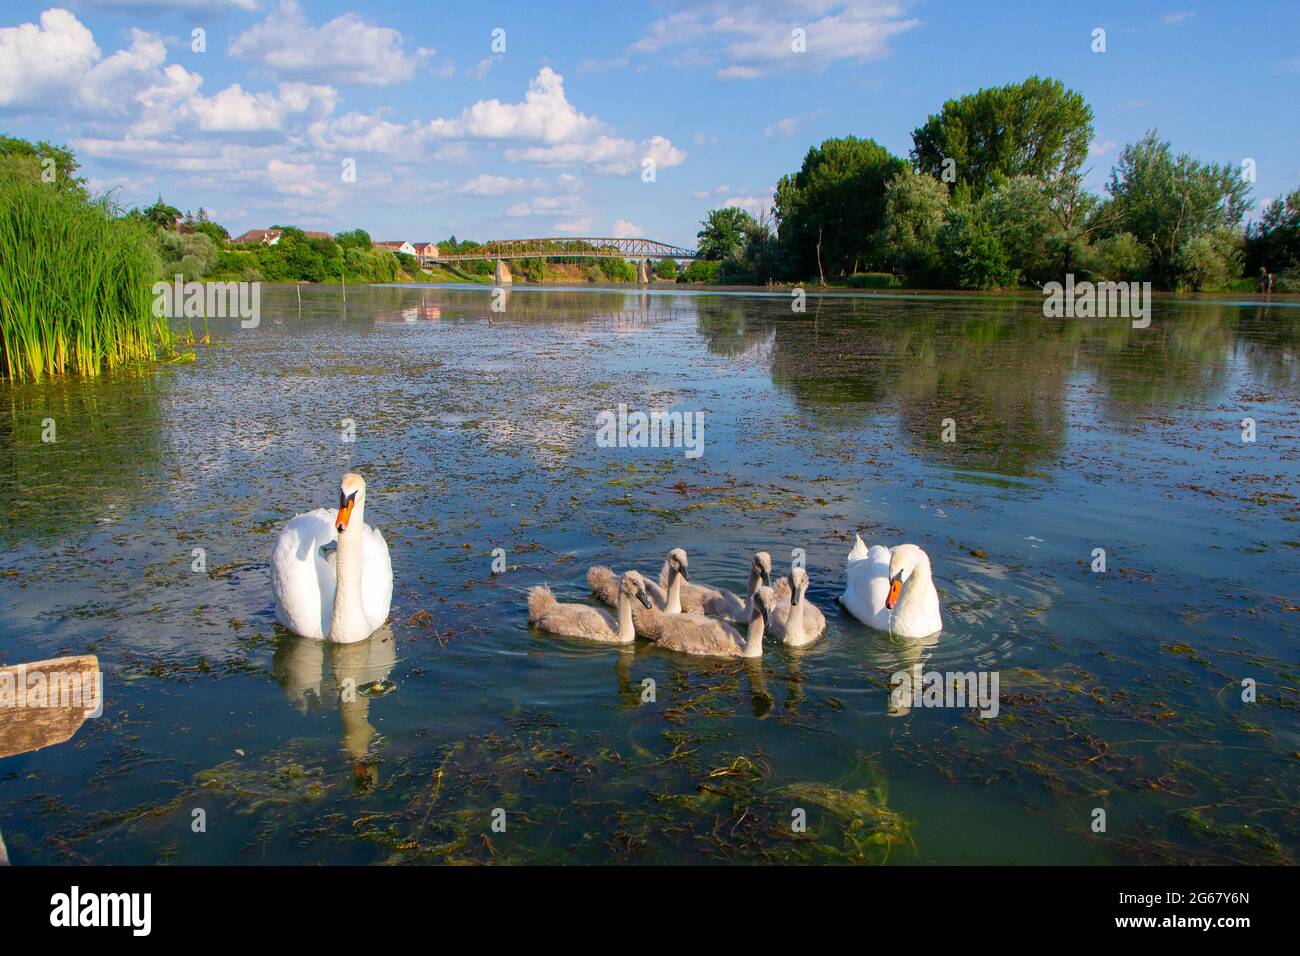 Cigni con i loro giovani sul fiume Studva - immagine Foto Stock